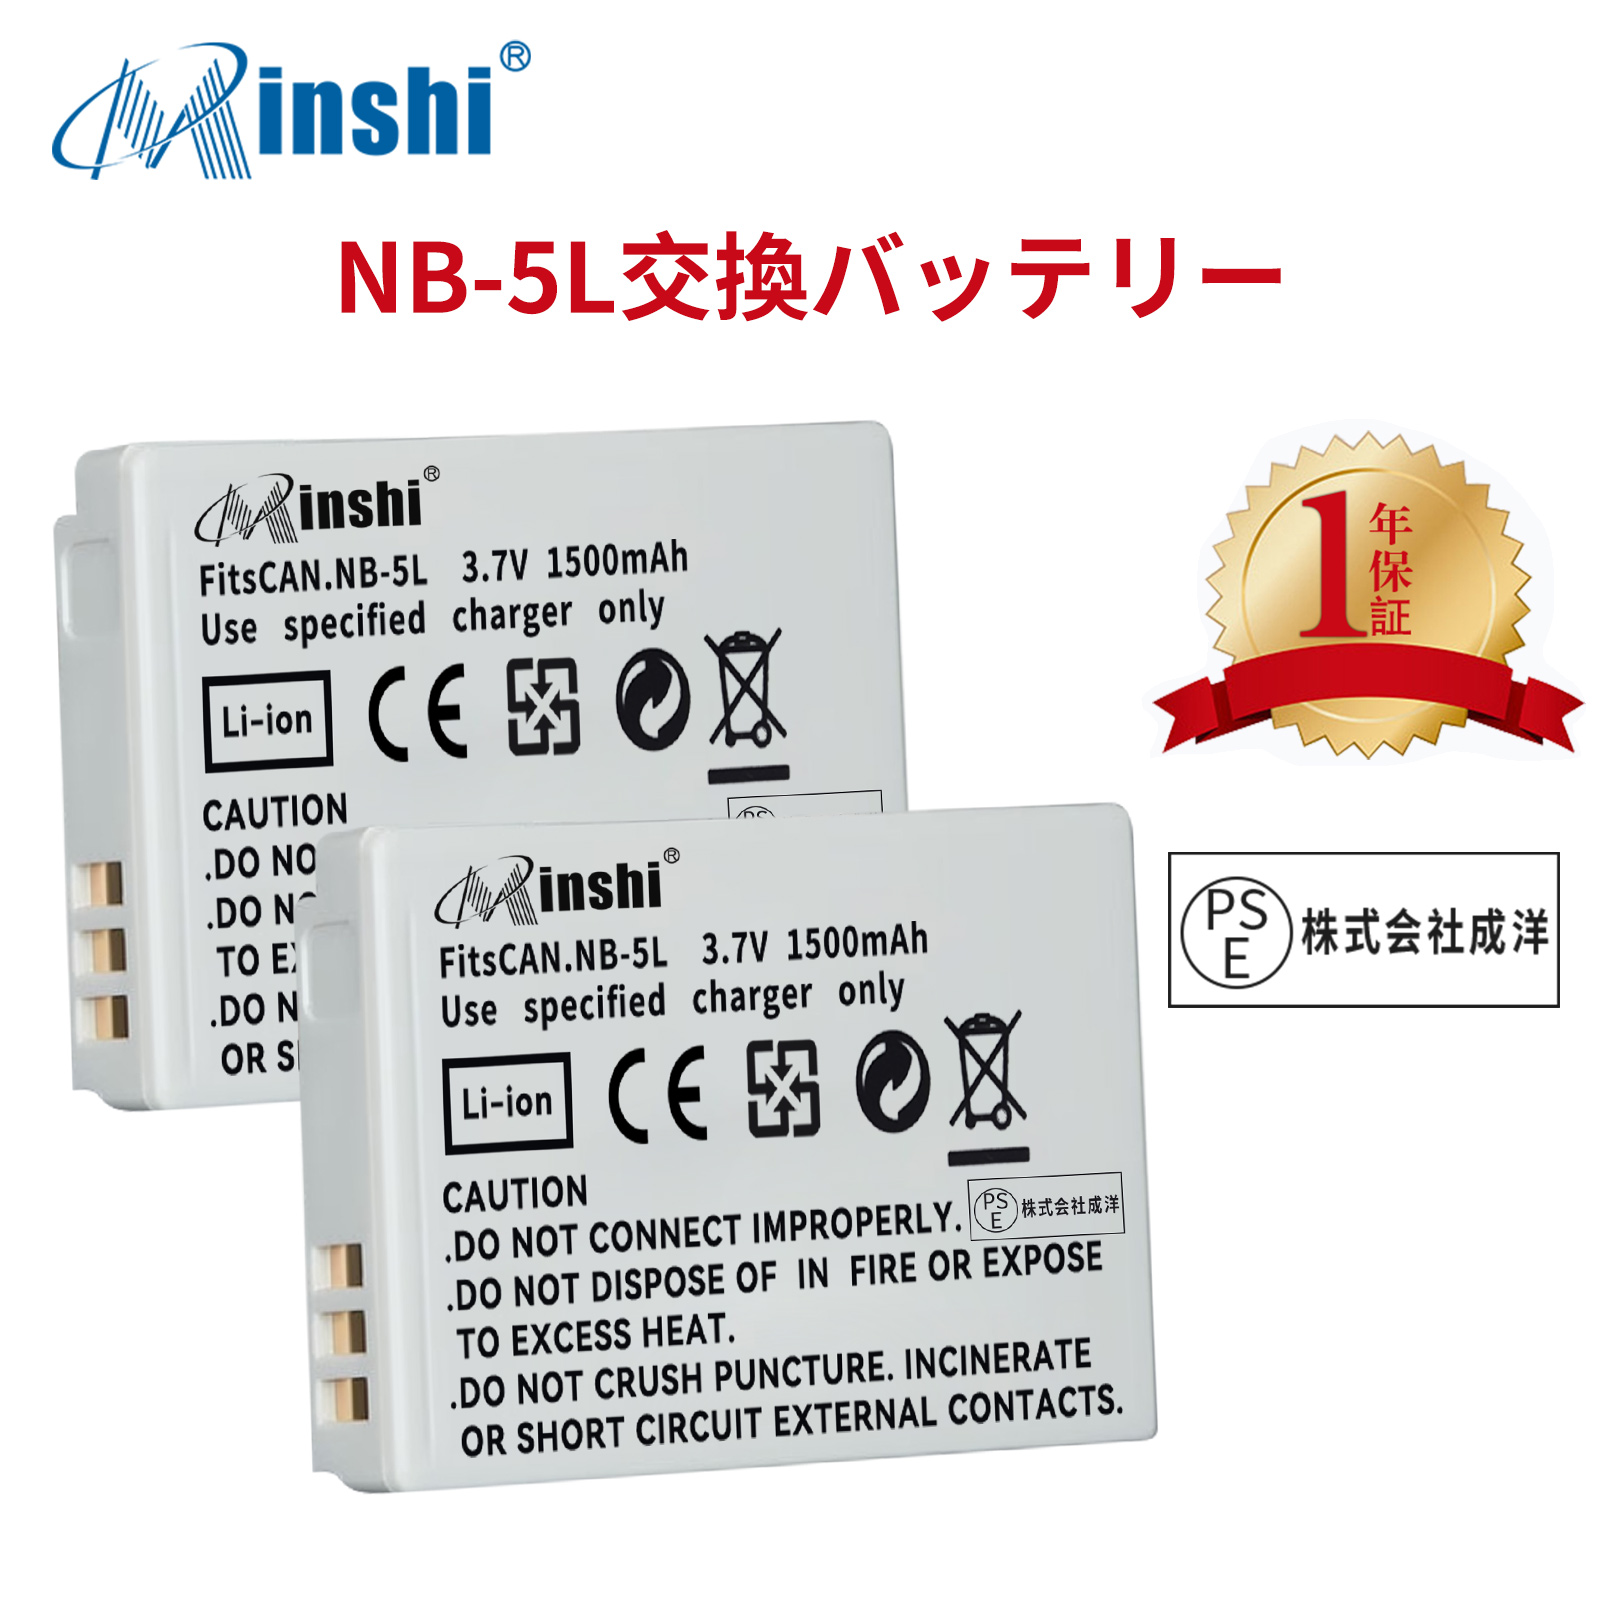 【２個セット】minshi CANON NB-5L 820IS NB-5L【1500mAh 3.7V】PSE認定済 高品質交換用バッテリー